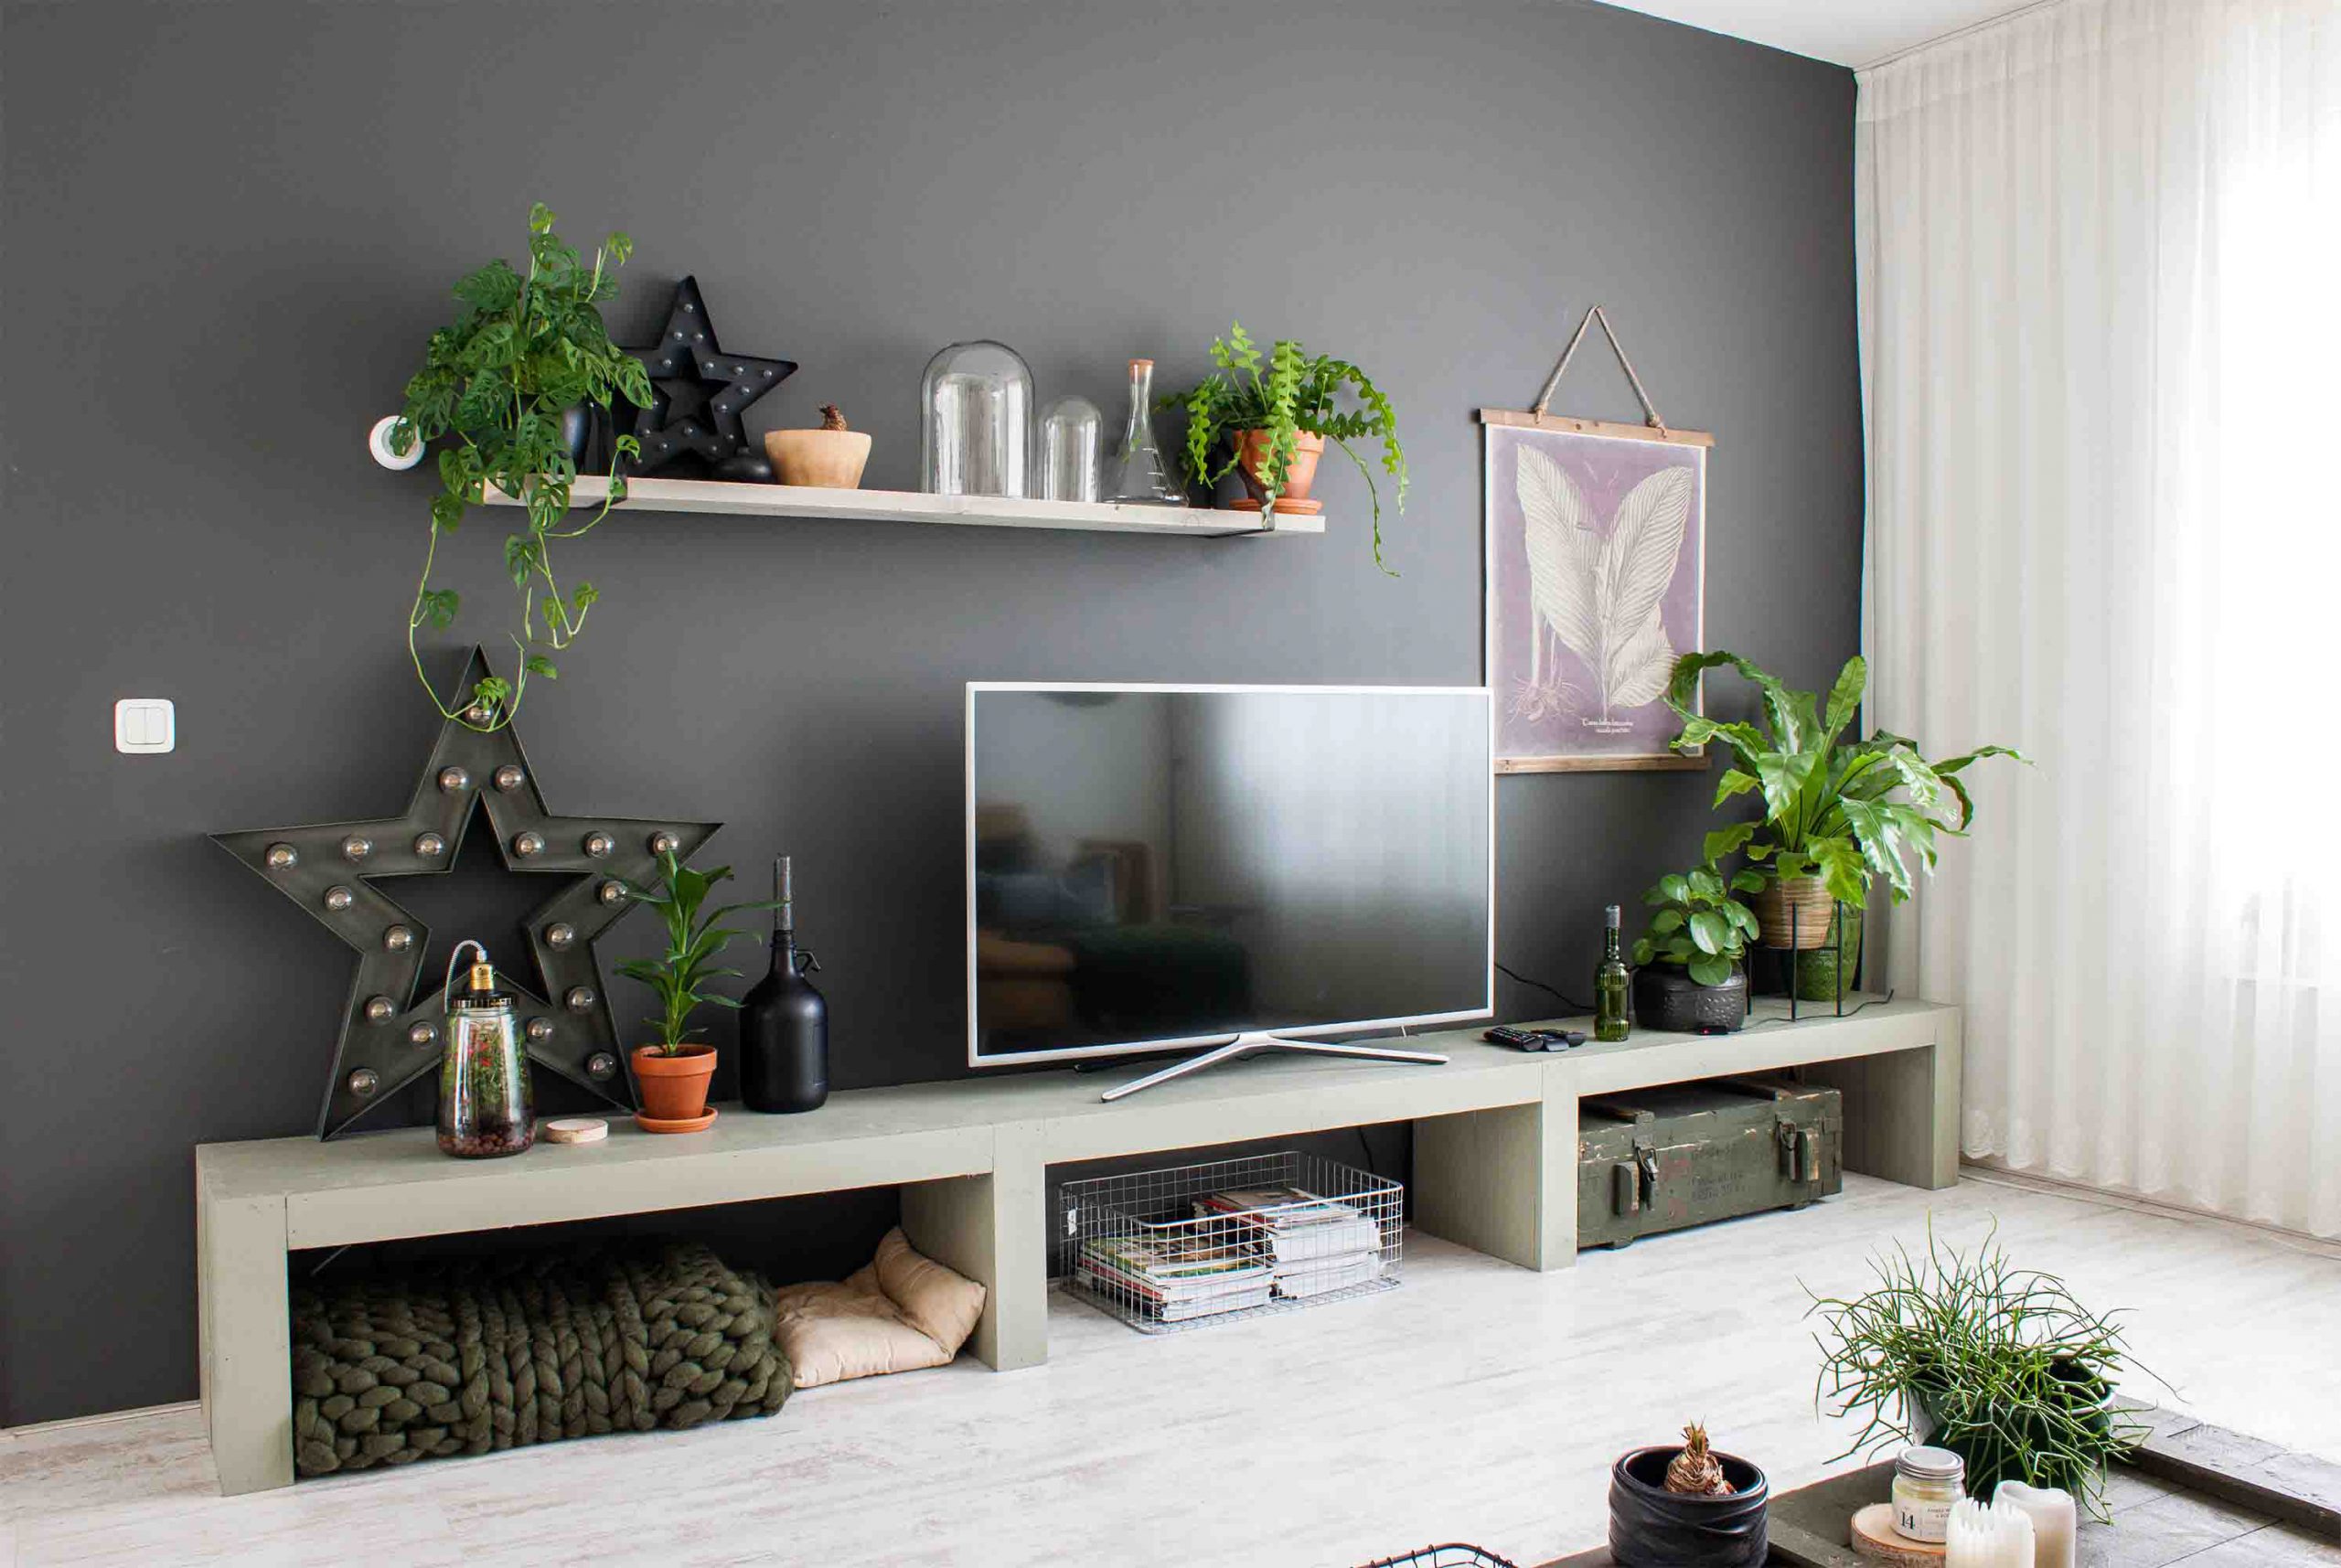 دیزاین دیوار پشت تلویزیون با شلف چوبی، قاب عکس و گلدان